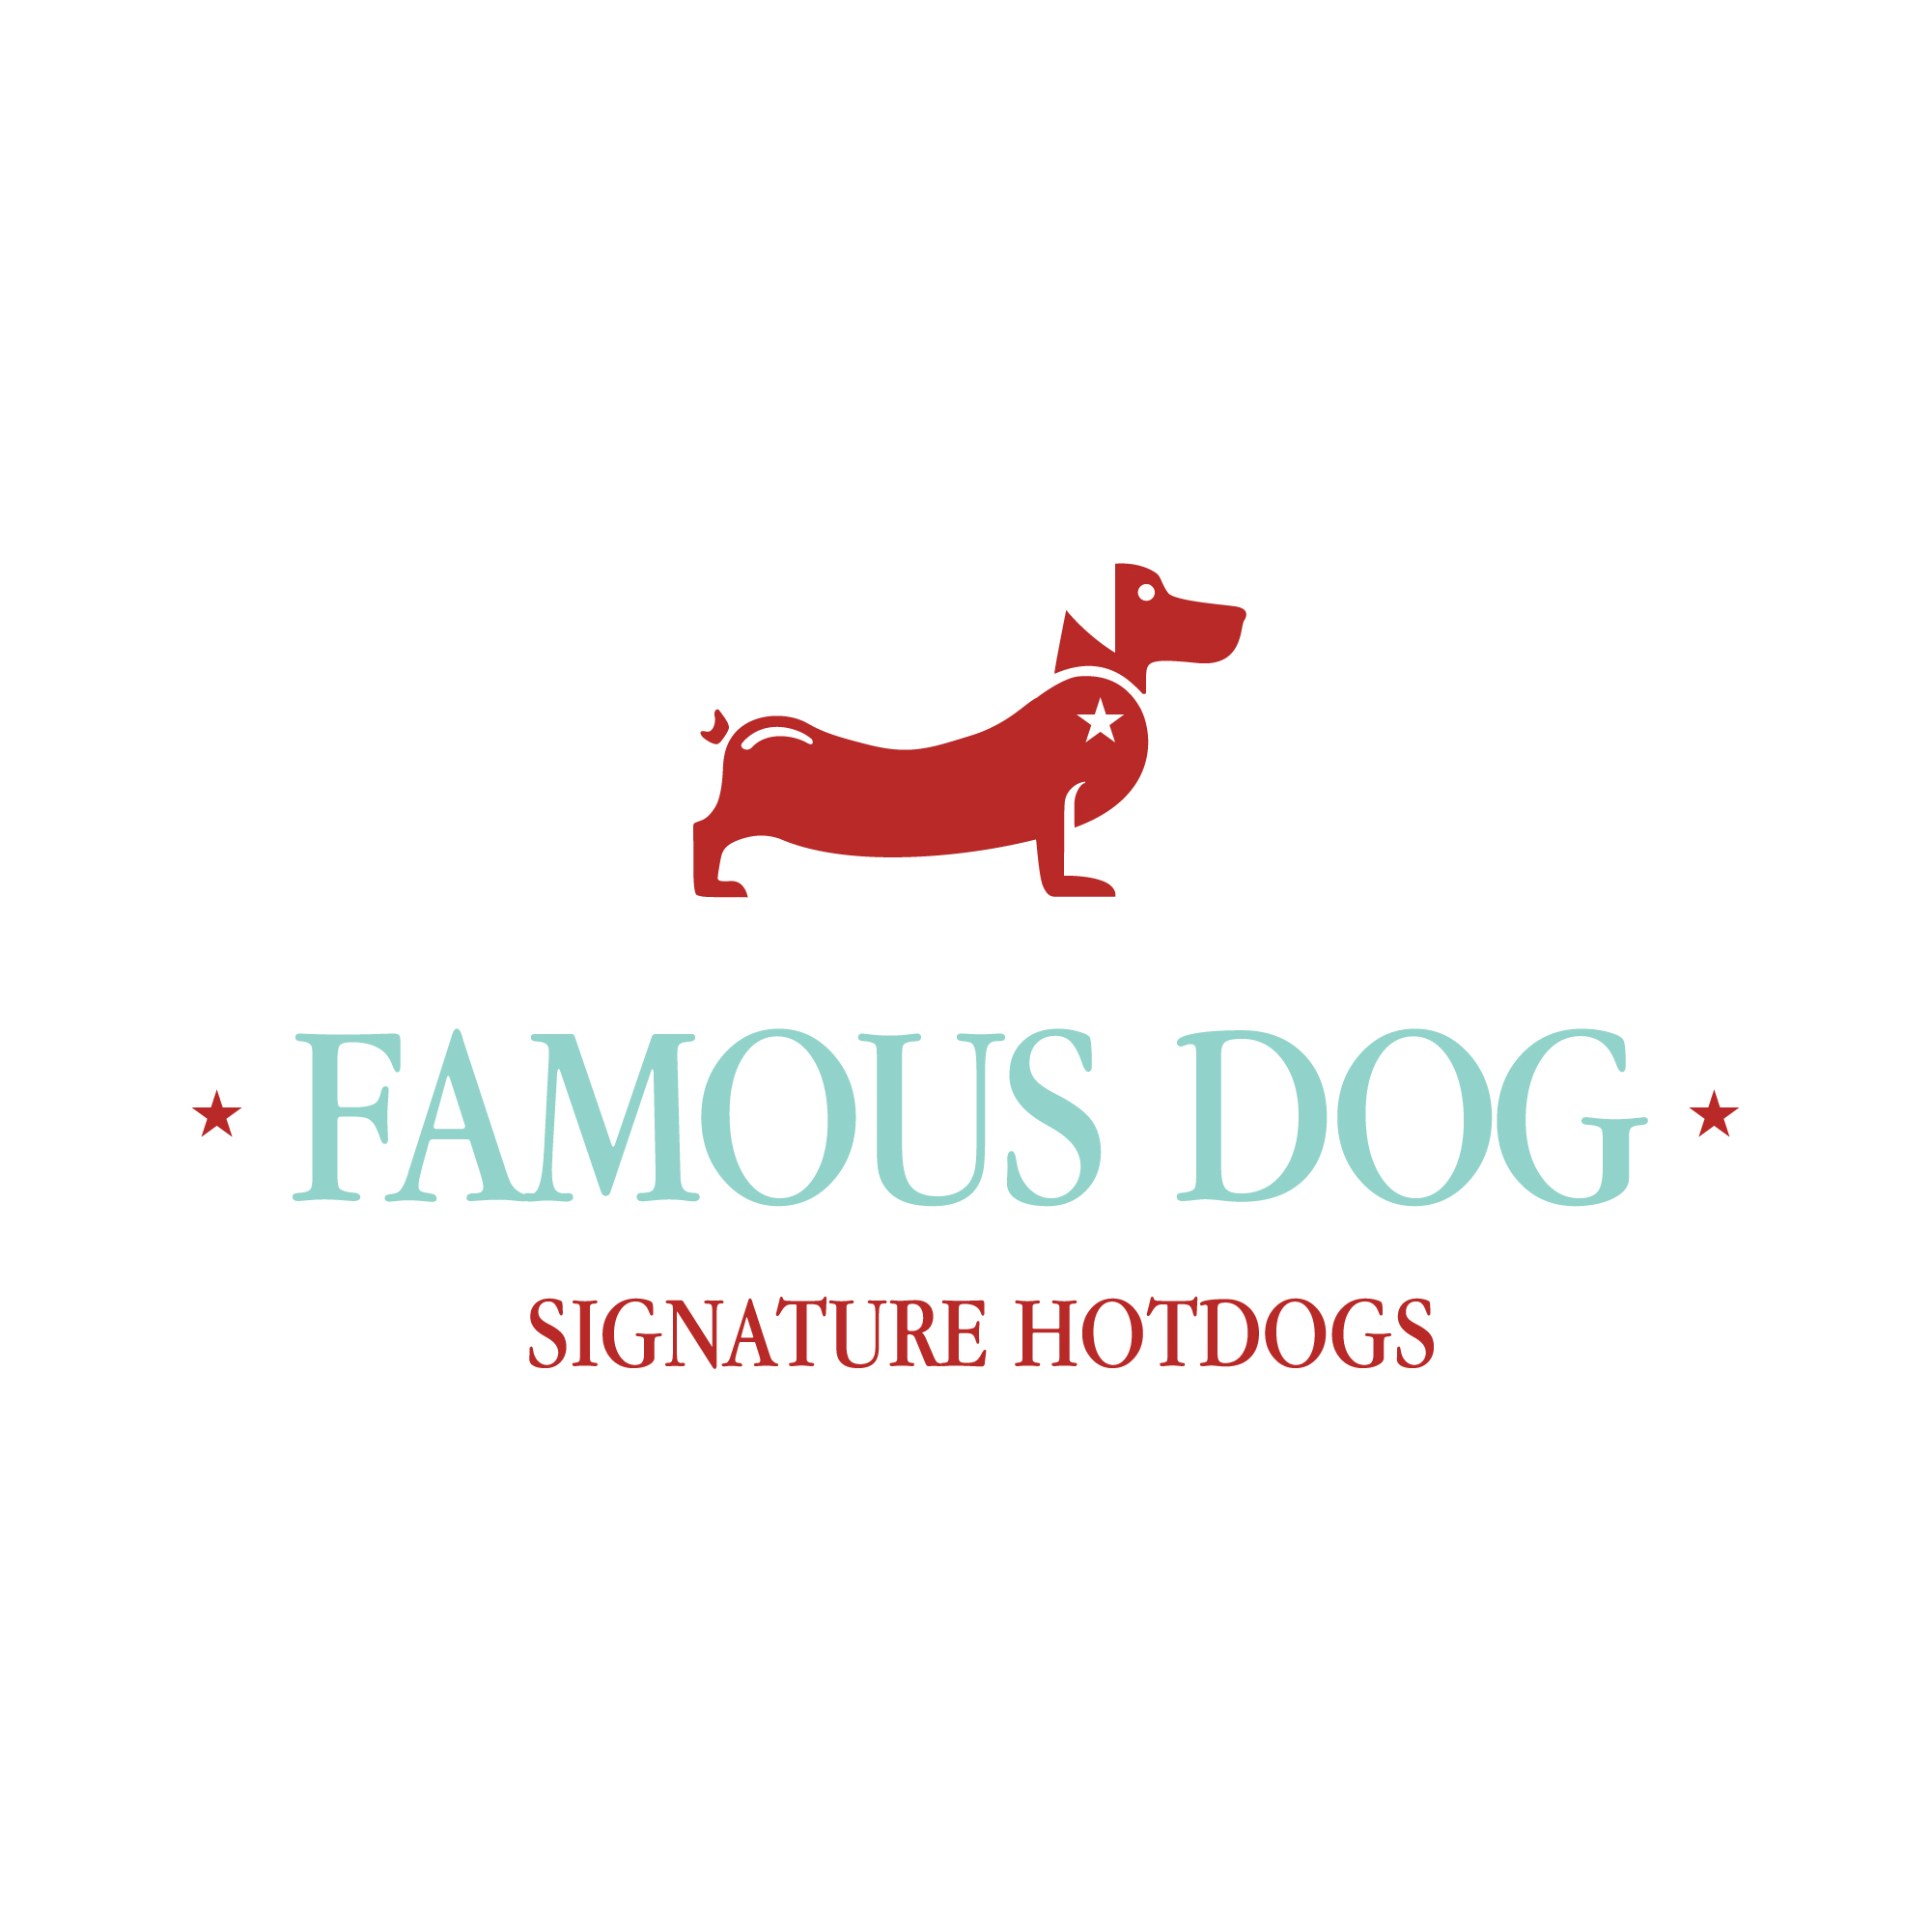 logo-design- black-white-minimalist-dog-weiner-red-hotdg-hot-dog